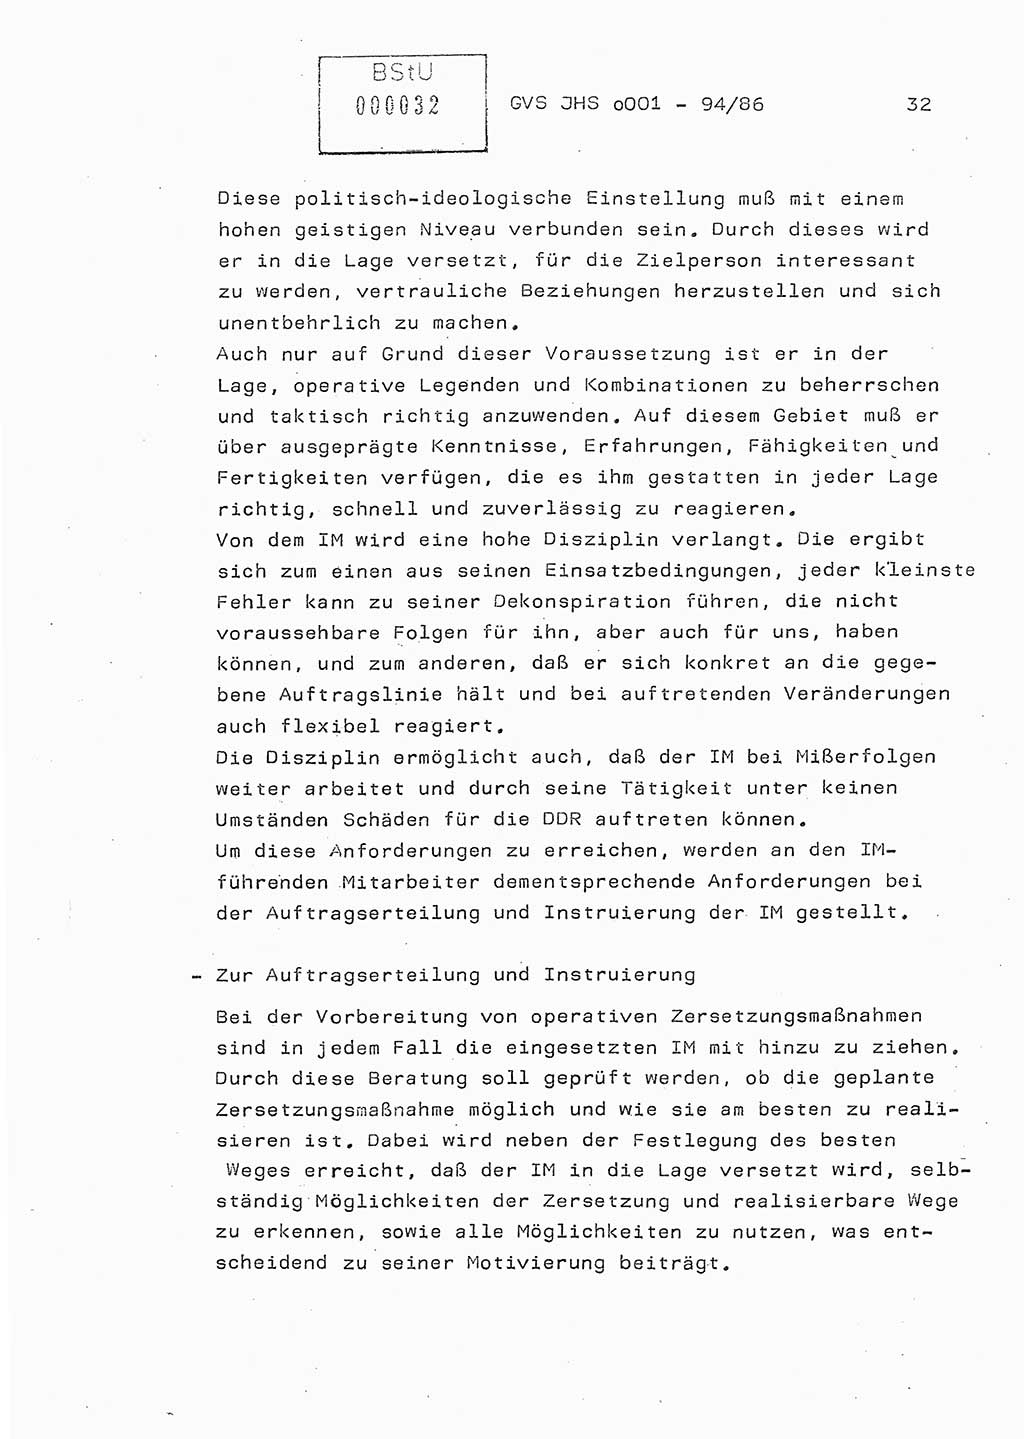 Diplomarbeit Oberleutnant Volkmar Pechmann (HA ⅩⅩ/5), Ministerium für Staatssicherheit (MfS) [Deutsche Demokratische Republik (DDR)], Juristische Hochschule (JHS), Geheime Verschlußsache (GVS) o001-94/86, Potsdam 1986, Blatt 32 (Dipl.-Arb. MfS DDR JHS GVS o001-94/86 1986, Bl. 32)